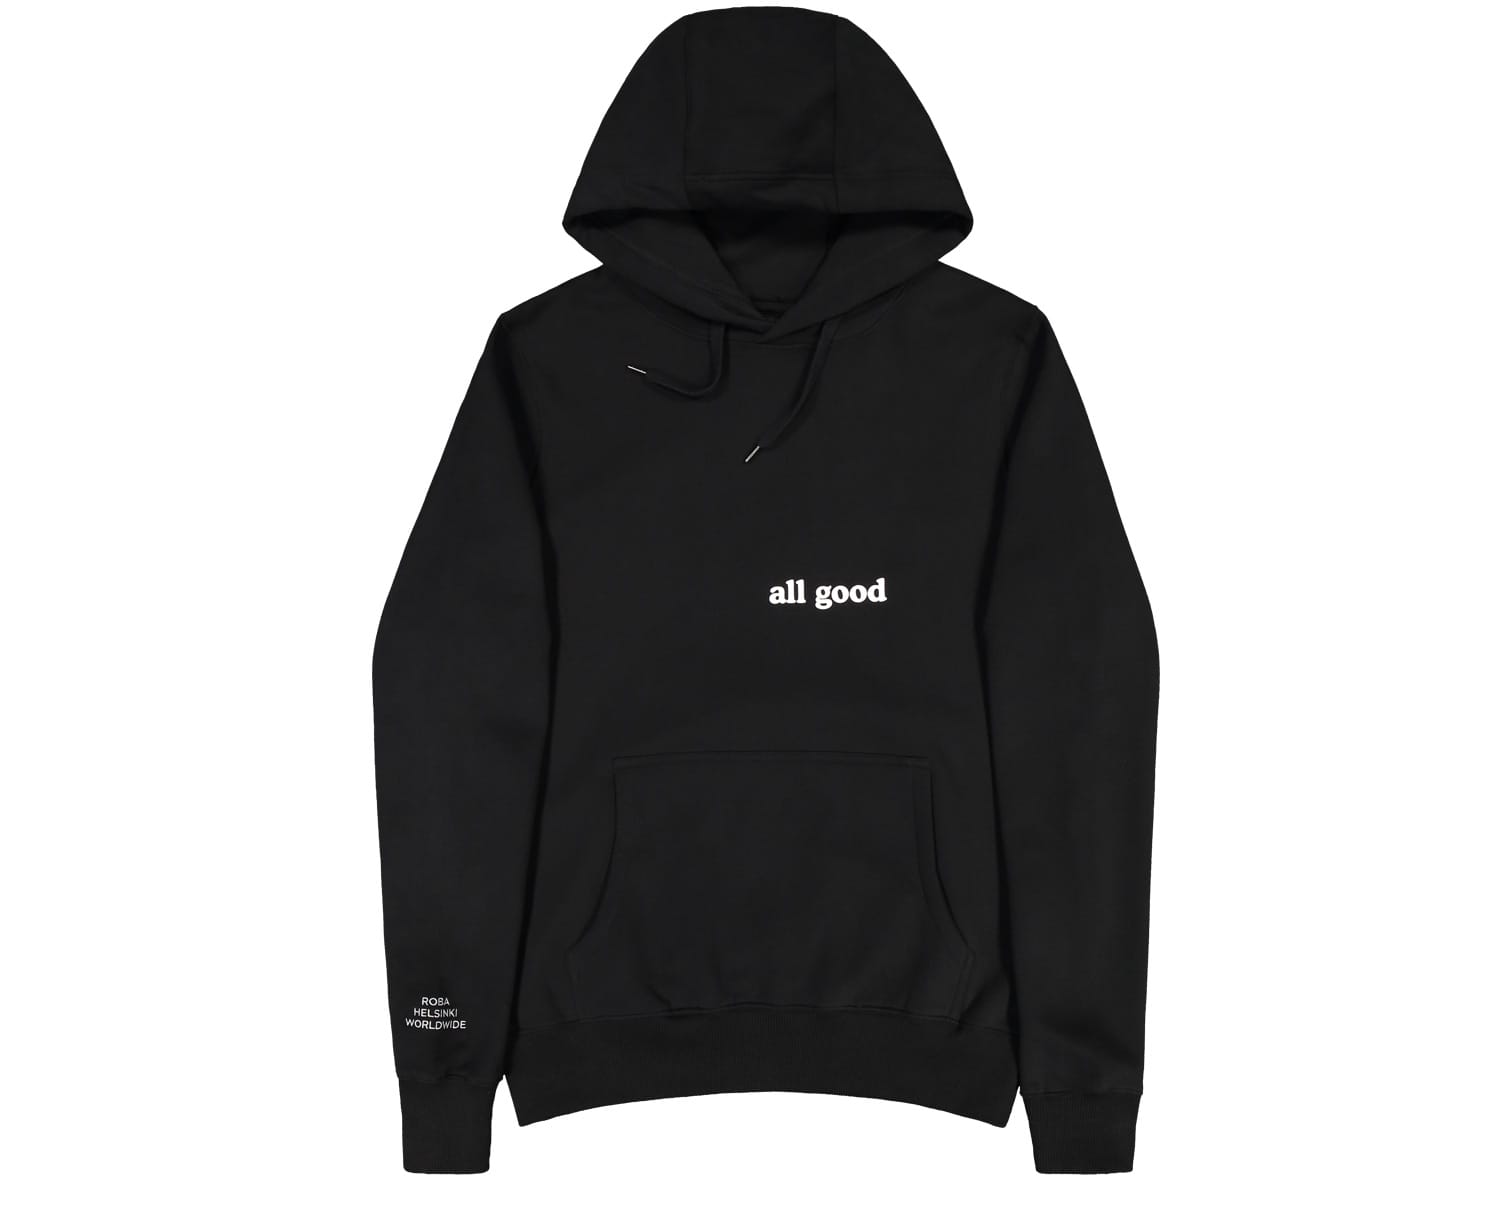 all good hoodie, black